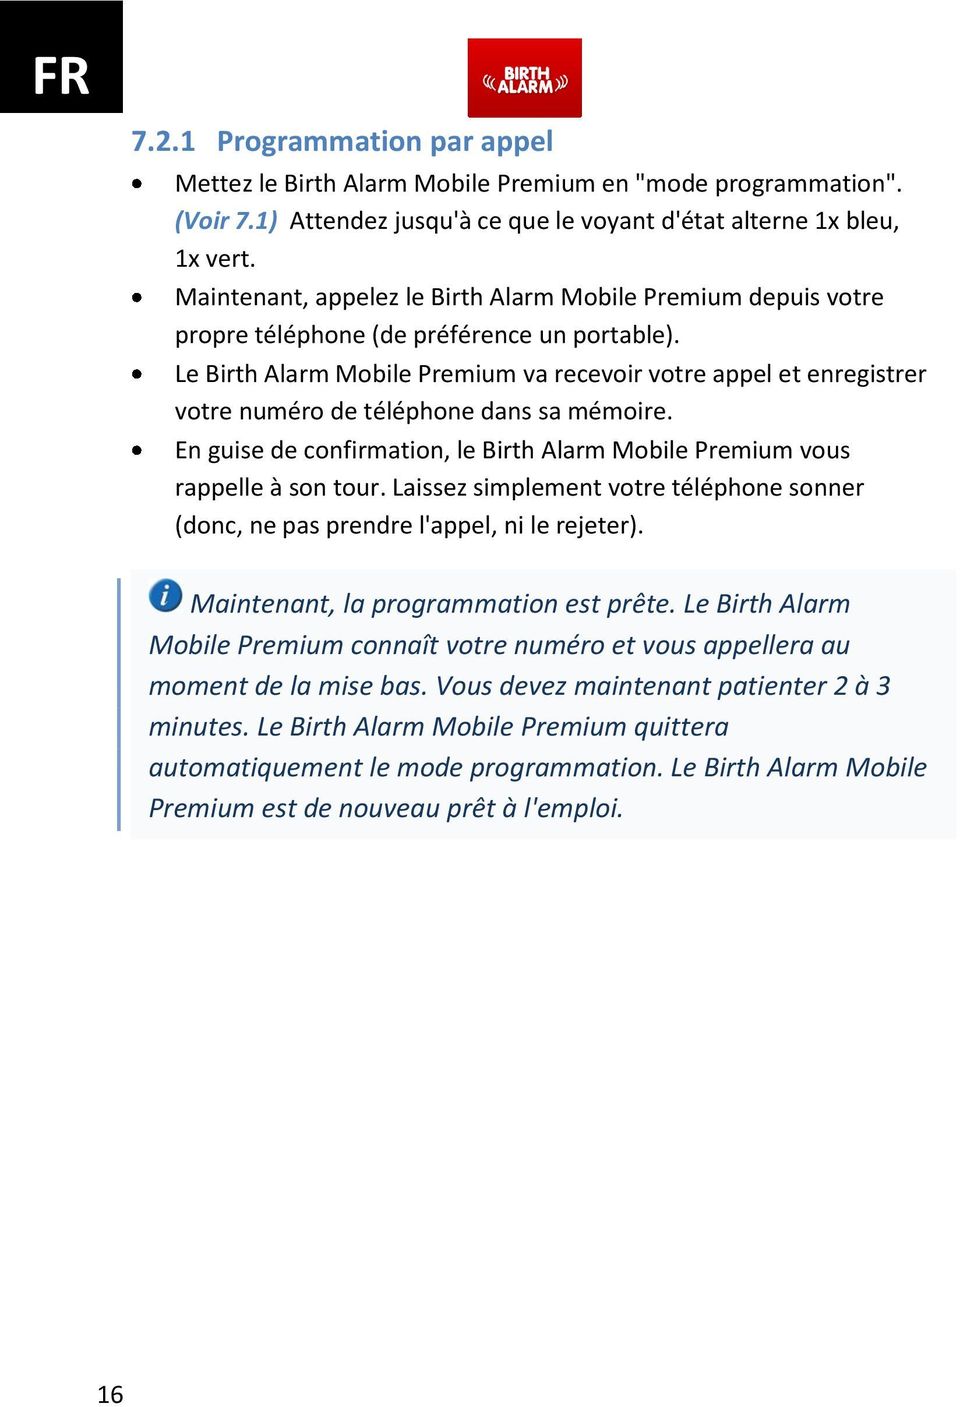 Le Birth Alarm Mobile Premium va recevoir votre appel et enregistrer votre numéro de téléphone dans sa mémoire. En guise de confirmation, le Birth Alarm Mobile Premium vous rappelle à son tour.